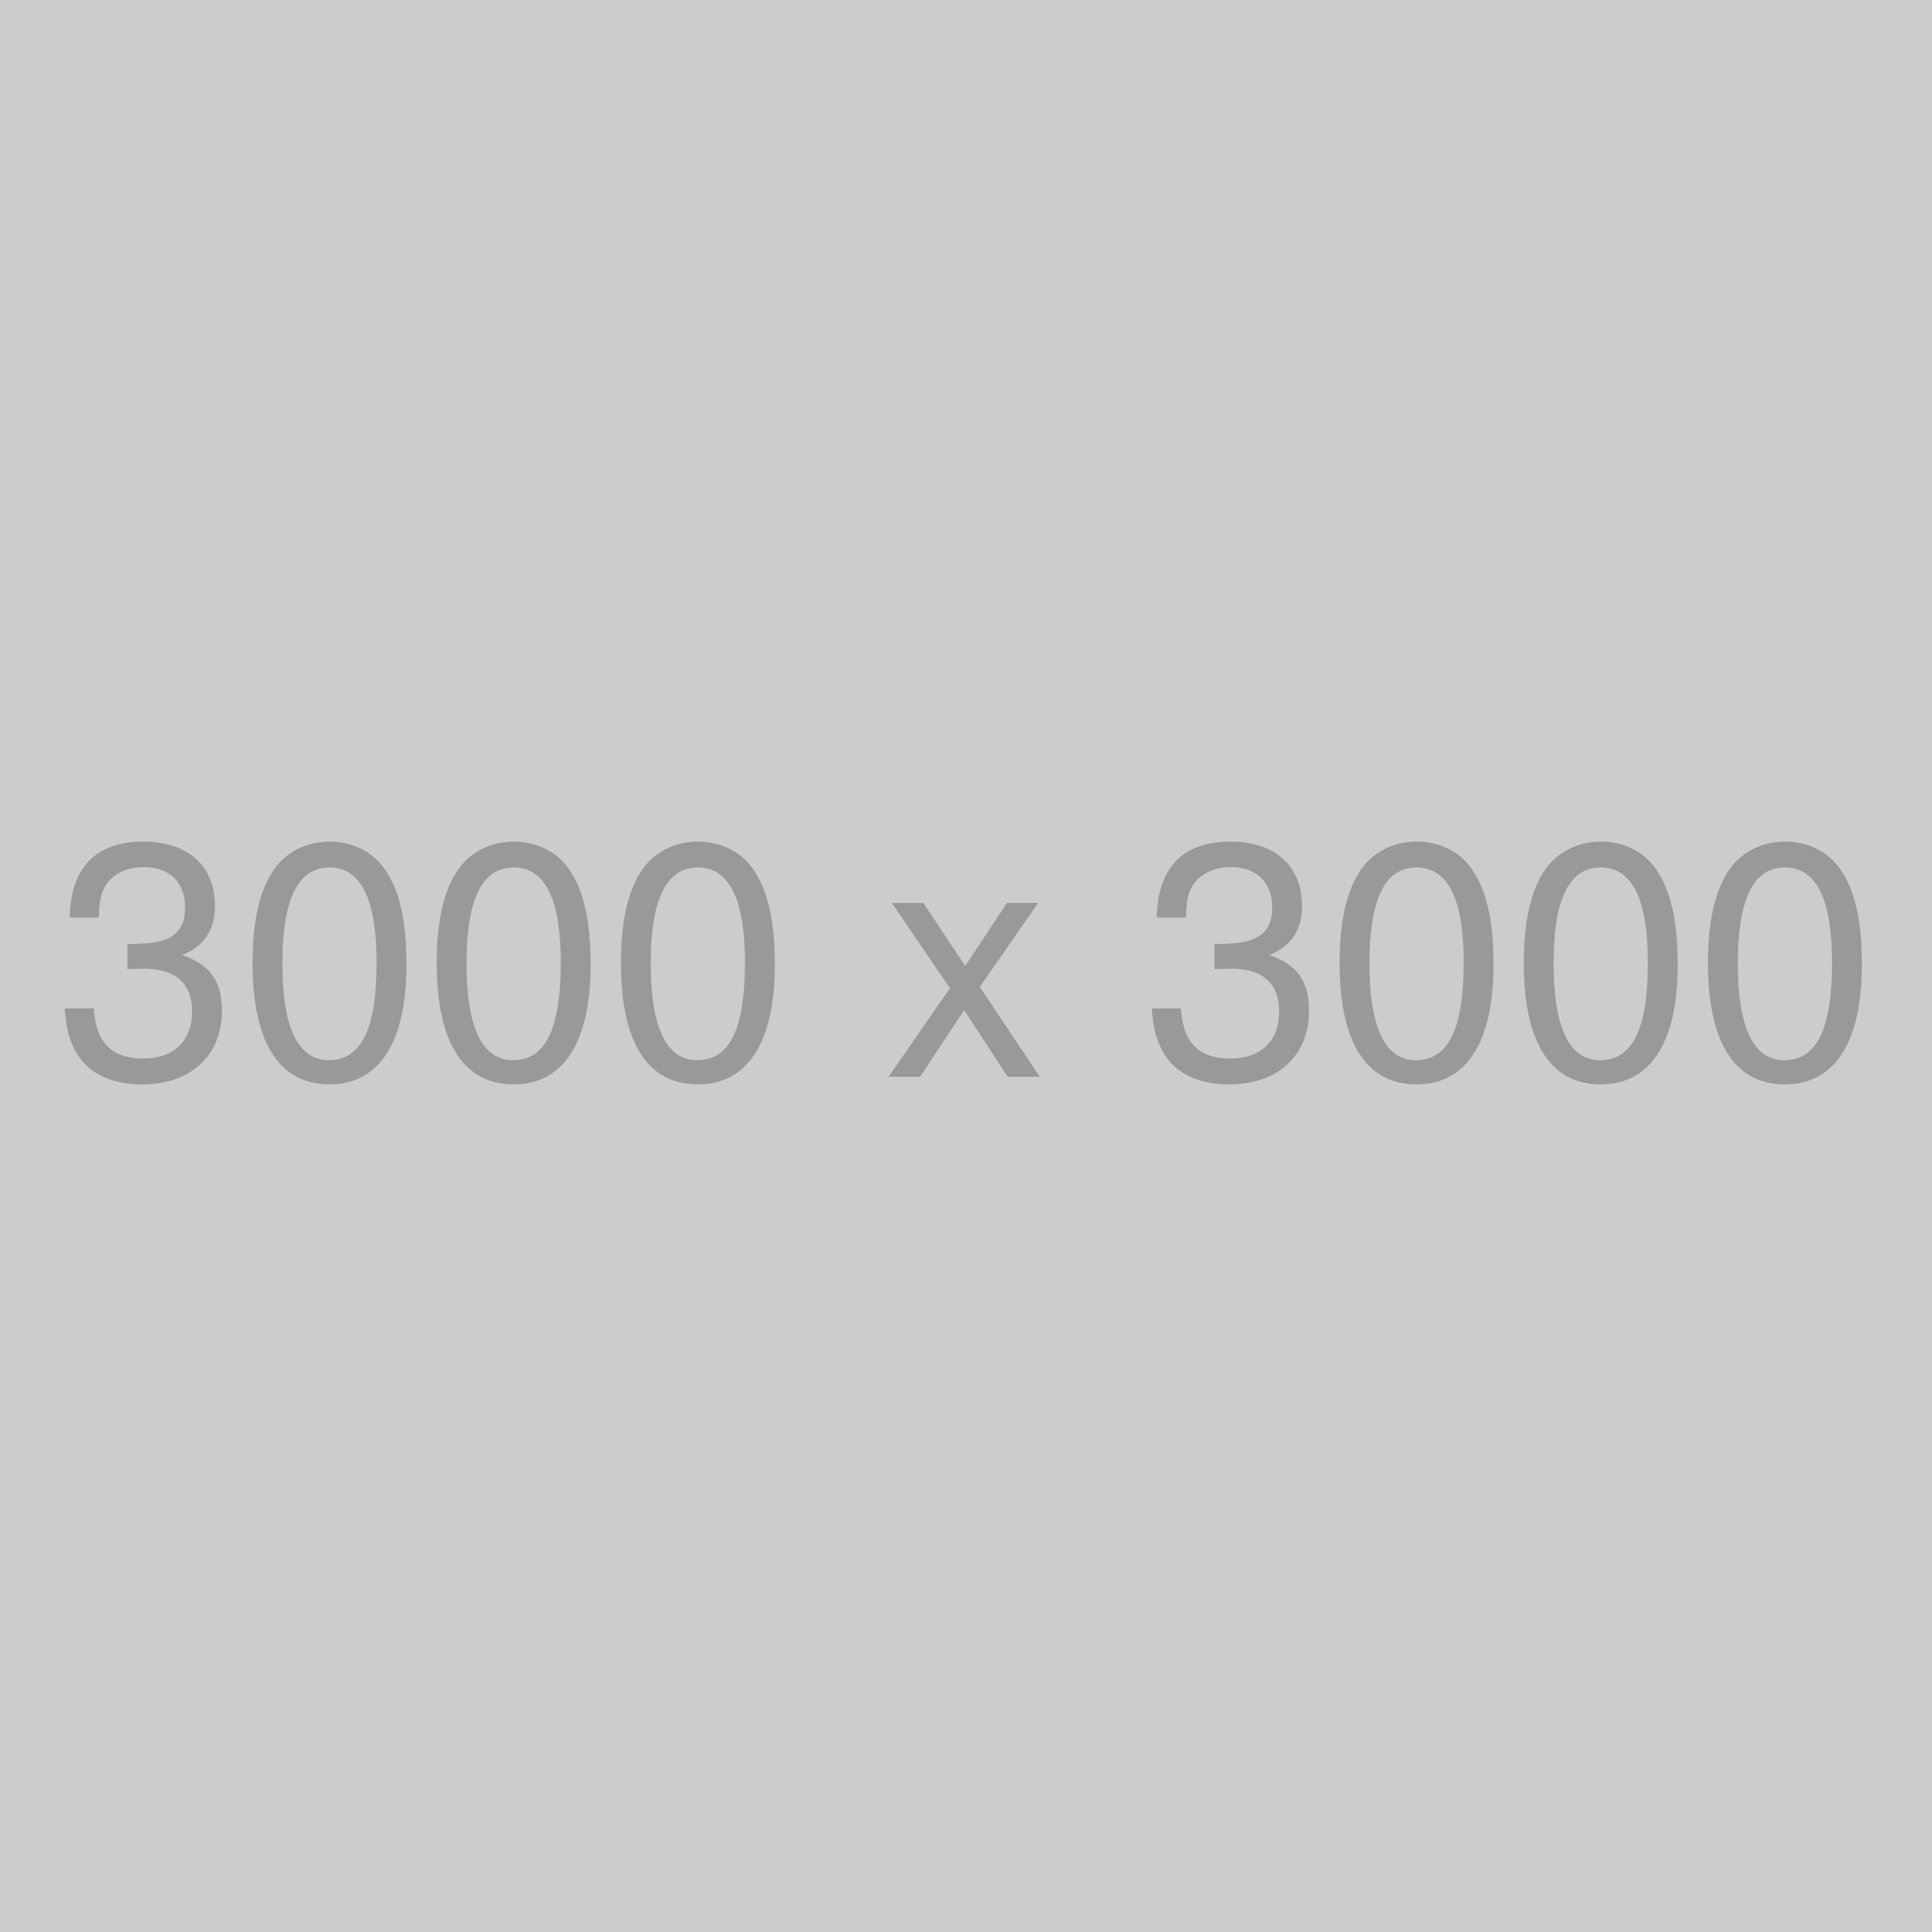 test/3000x3000